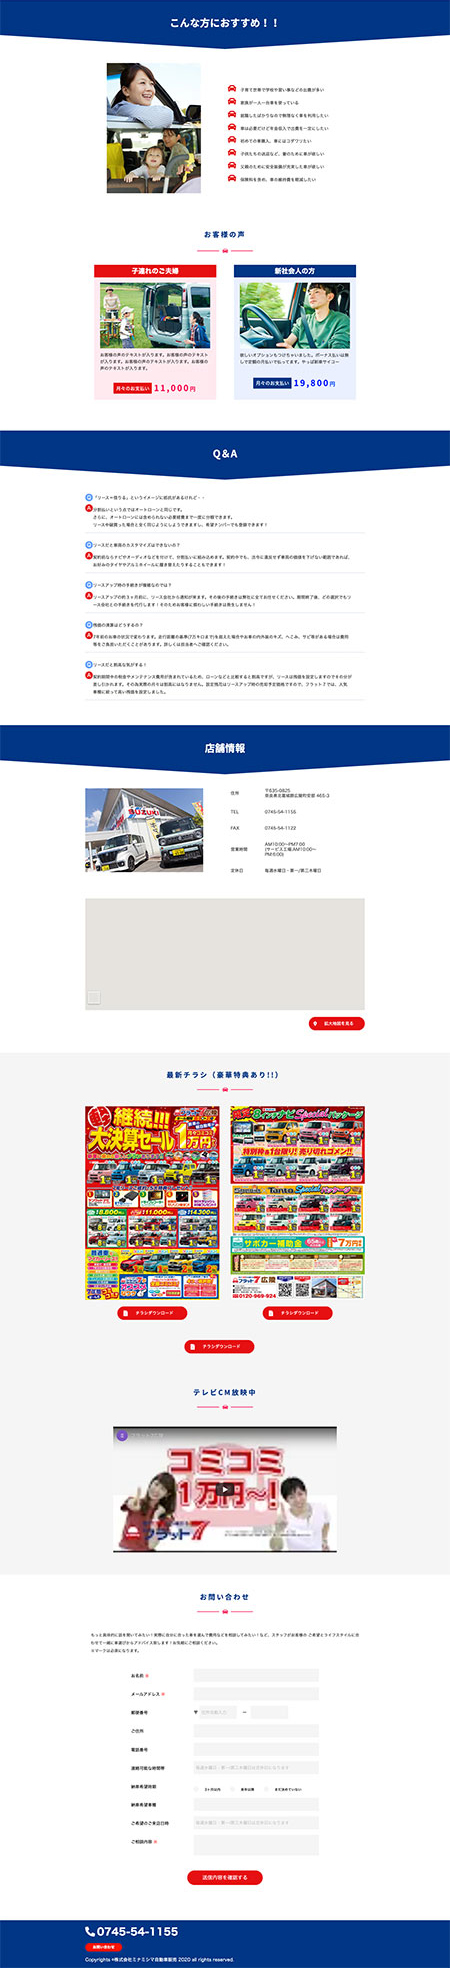 ミナミシマ自動車販売 フラット7 ランディングページ